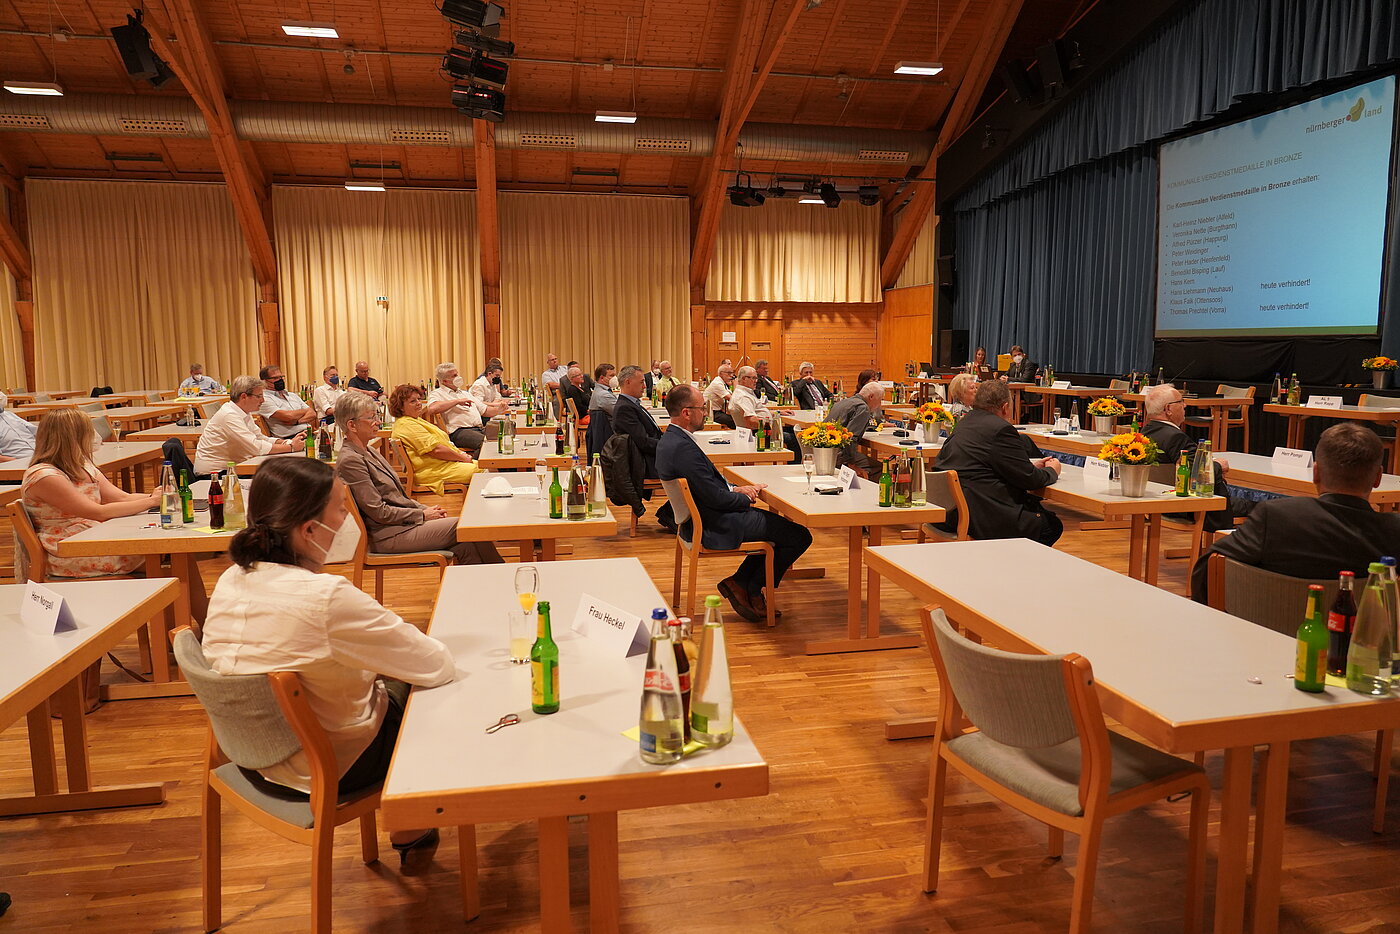 In etwa 30 Menschen unterschiedlichen Alters und Geschlechts sitzen an Tischen in der Karl-Diehl-Halle in Röthenbach und schauen zur Bühne. Dort gibt es auf einer großen Leinwand eine Präsentation zu sehen.